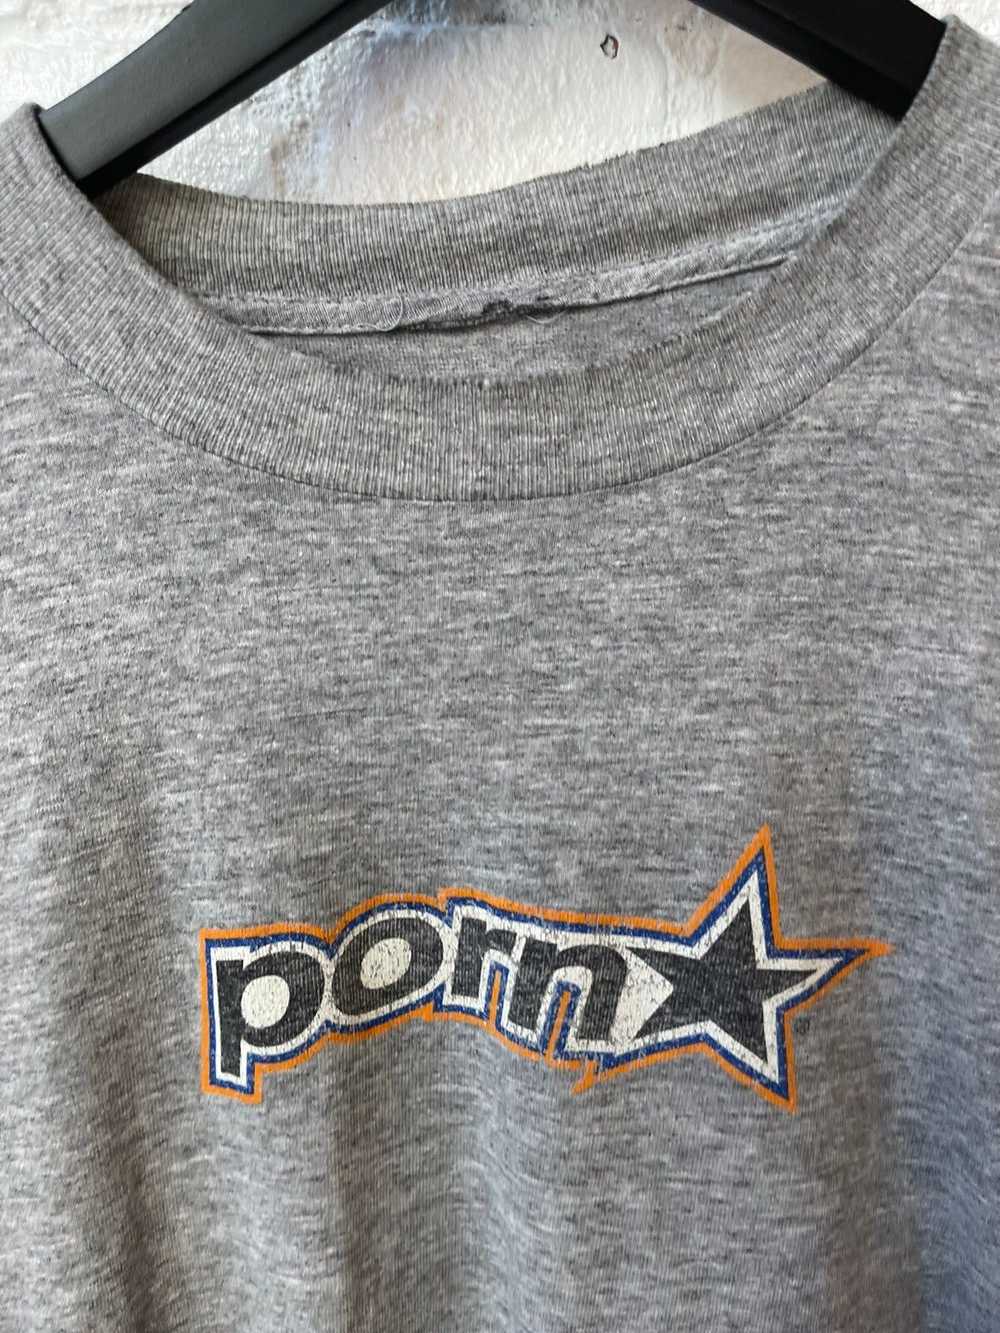 Vintage Vintage PornStar PORN STAR Shirt 90s 4Gse… - image 3